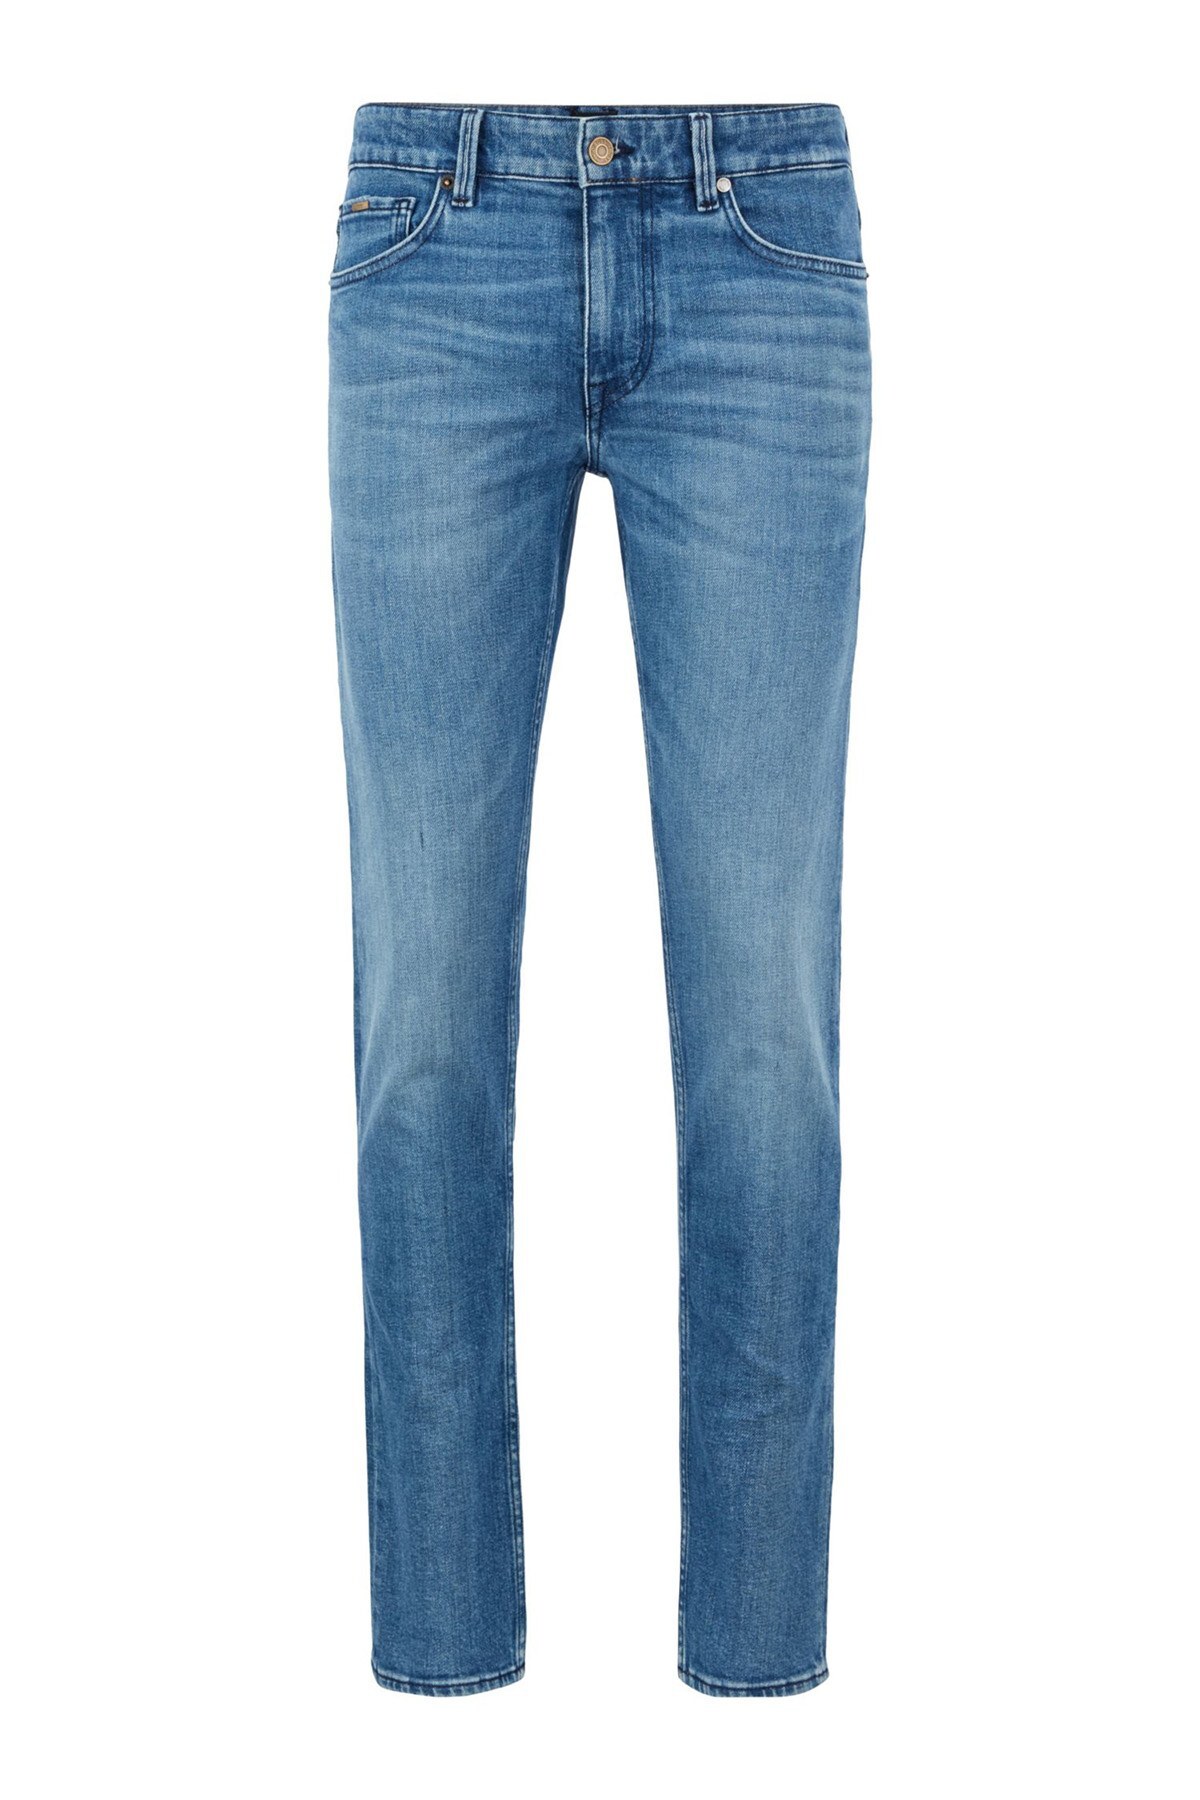 Hugo Boss Pamuklu Extra Slim Fit Jeans Erkek Kot Pantolon 50449628 433 LACİVERT